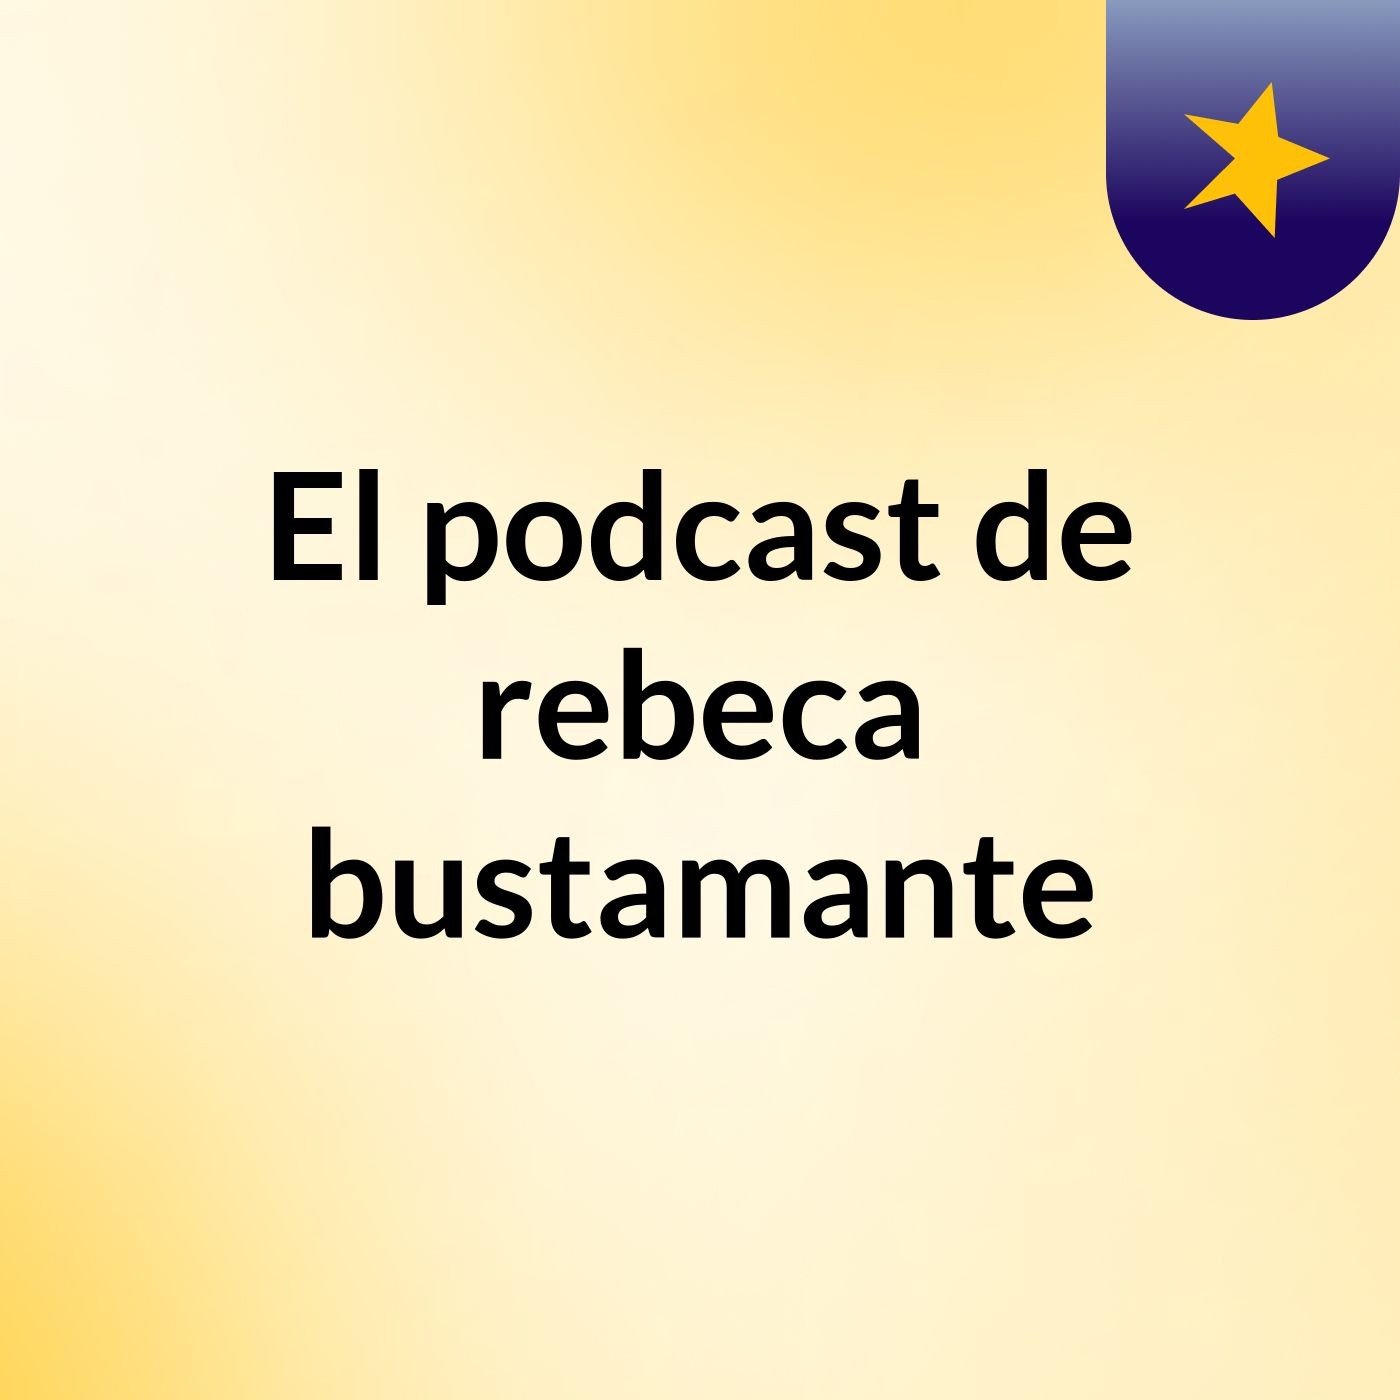 El podcast de rebeca bustamante